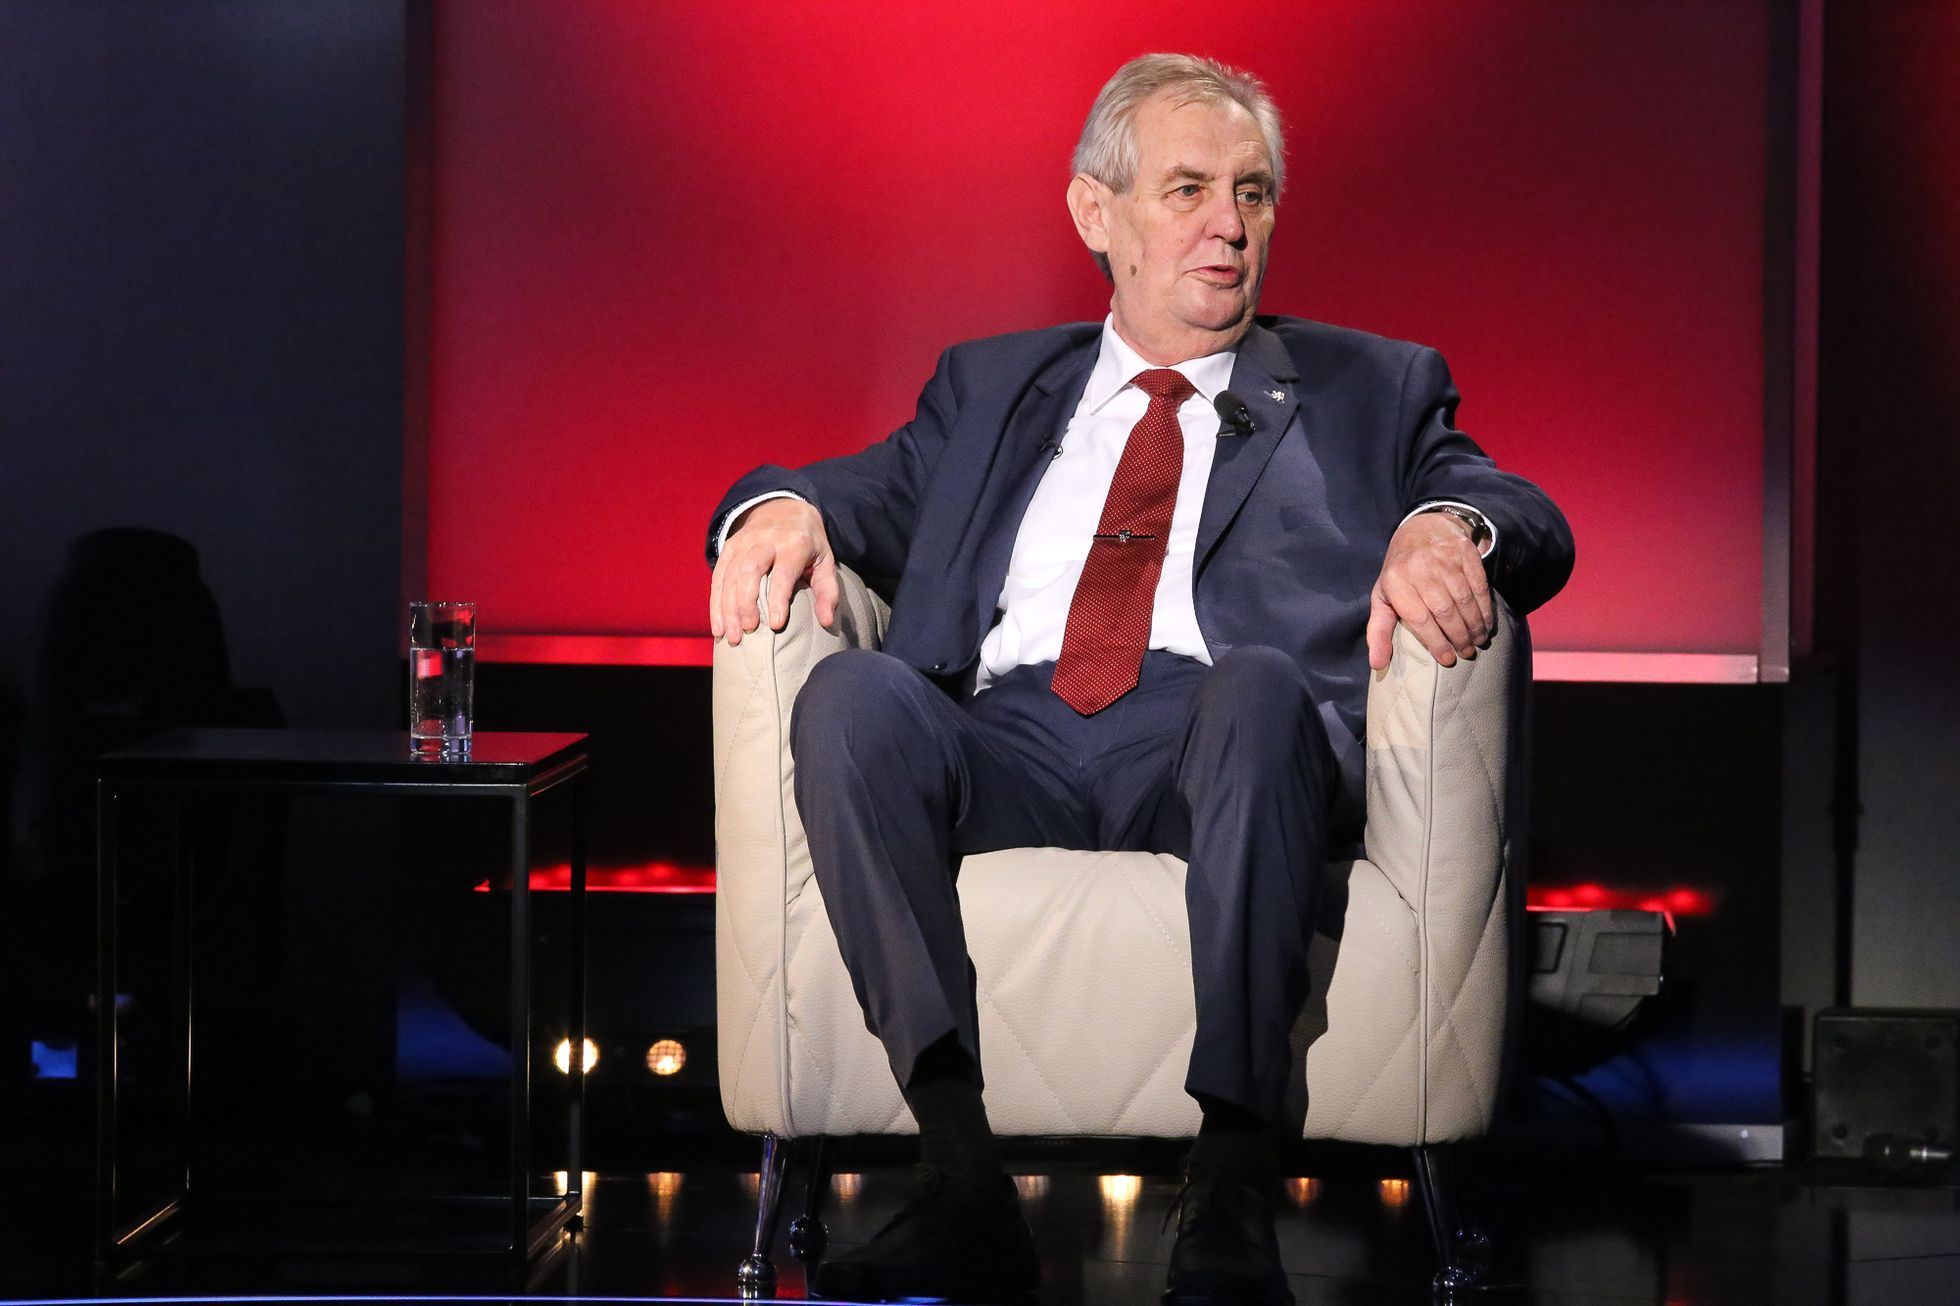 Prezidentská debata Miloše Zemana a Jiřího Drahoše na TV Prima